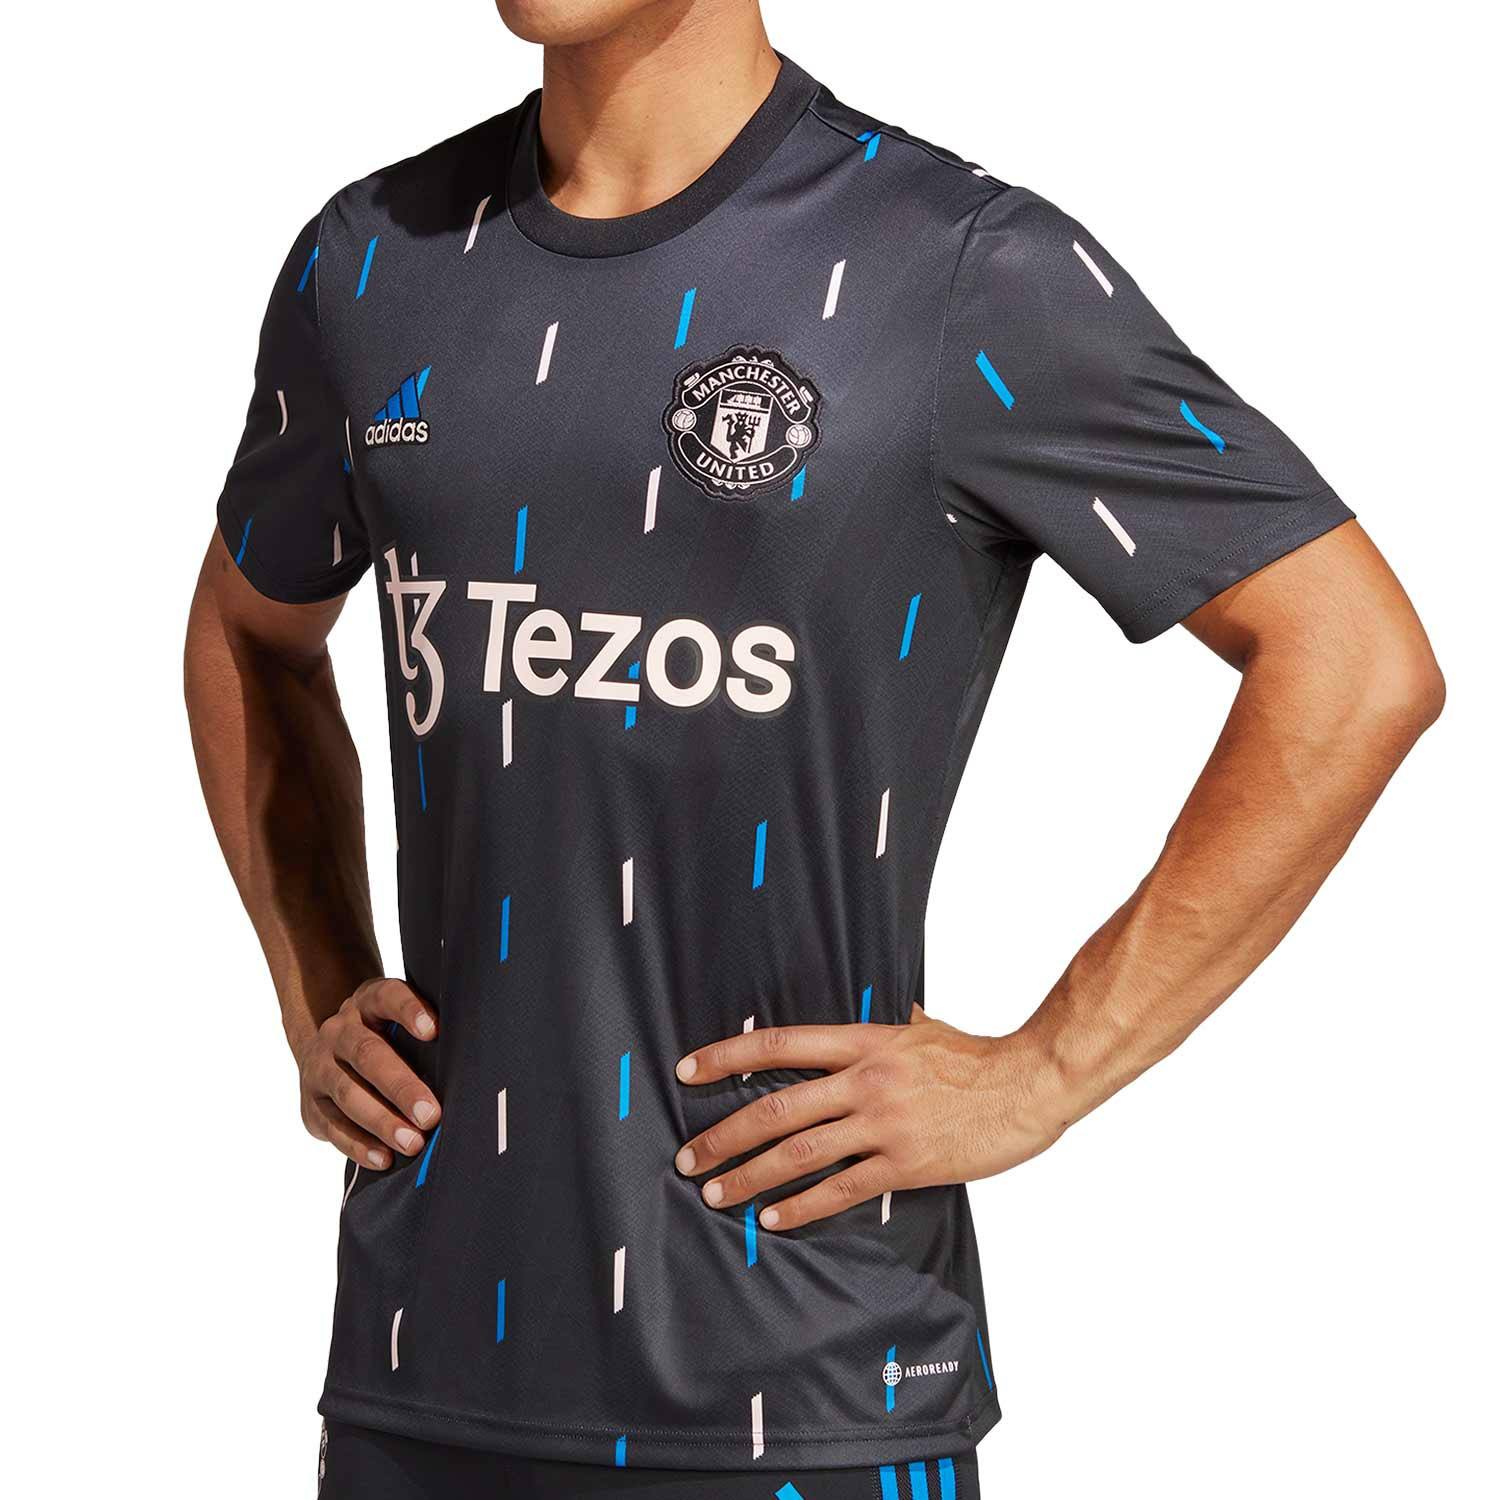 Camiseta Deportiva Prepartido Manchester City F.C. para Hombre, Negro